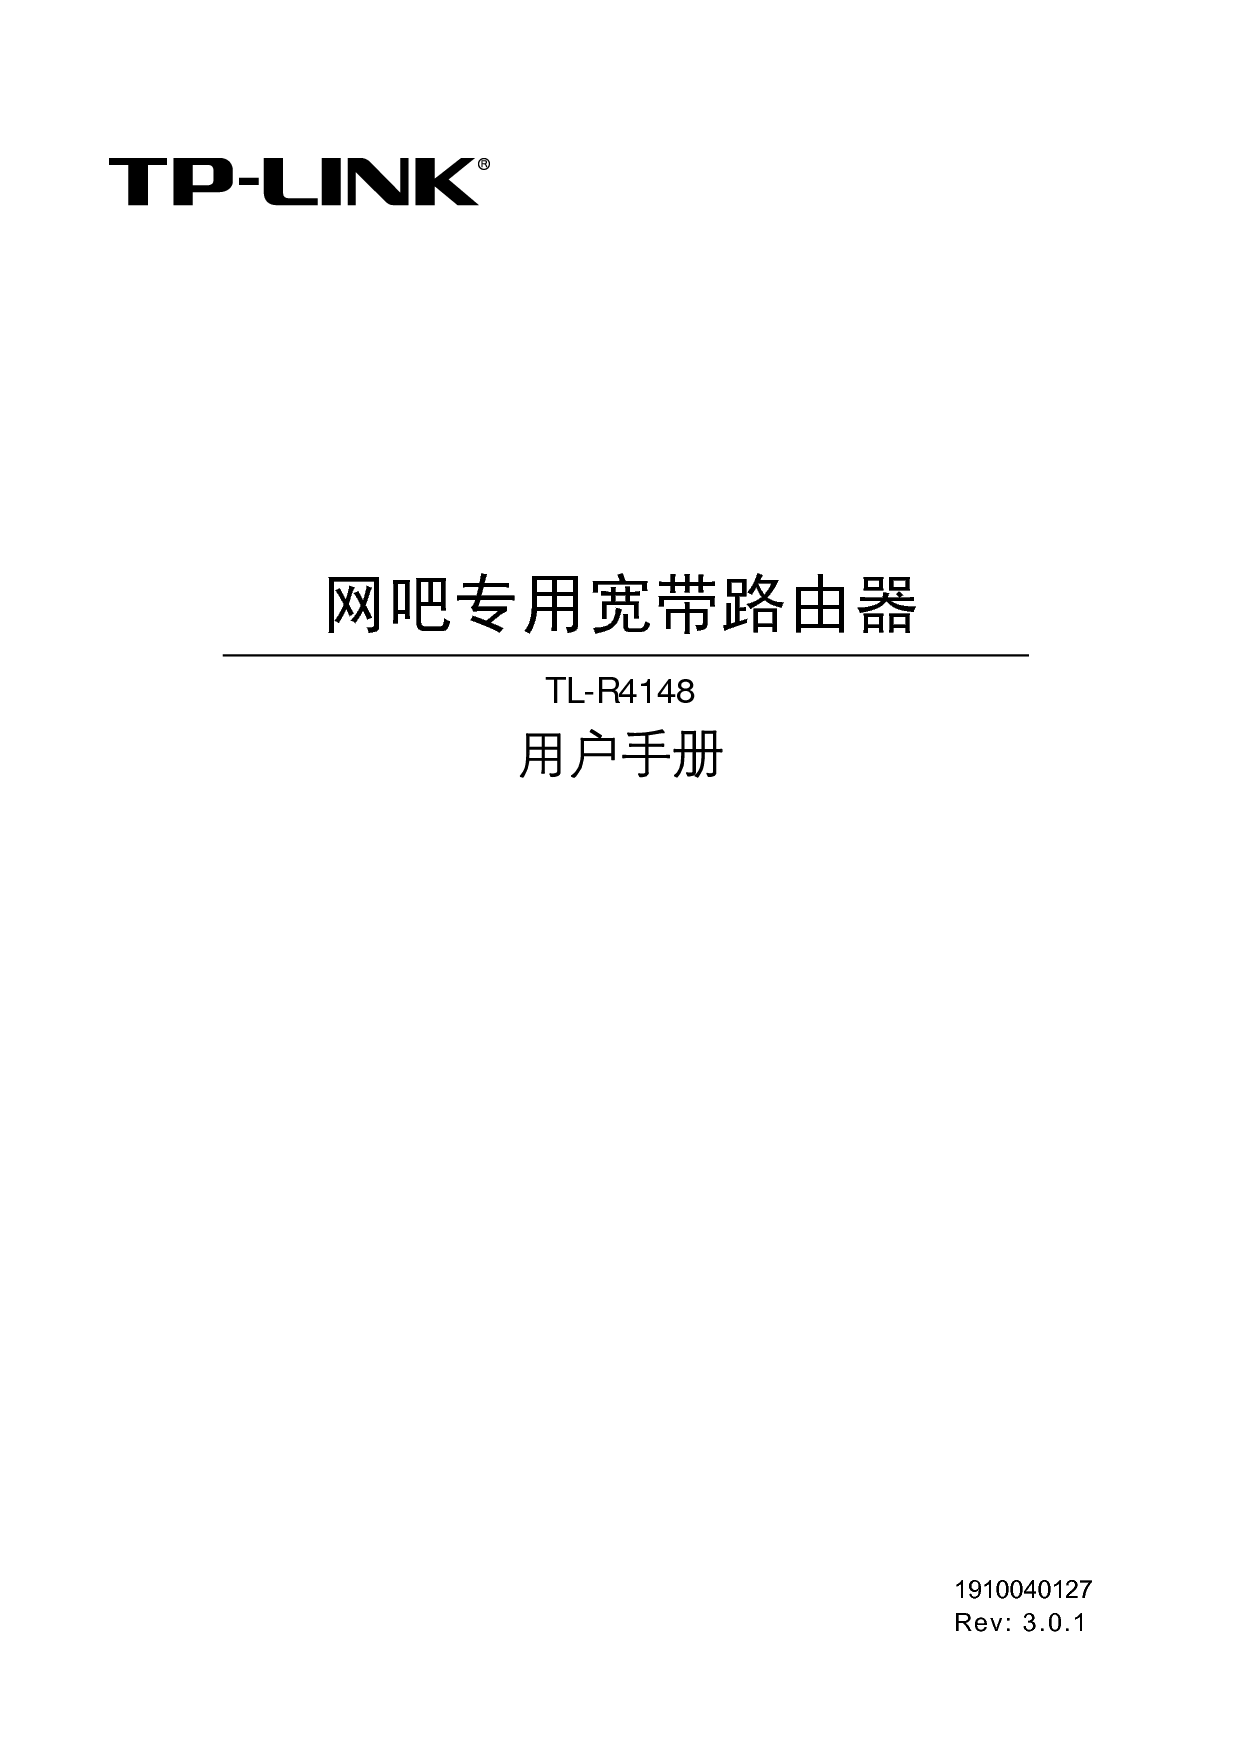 普联 TP-Link TL-R4148 第三版 用户手册 封面